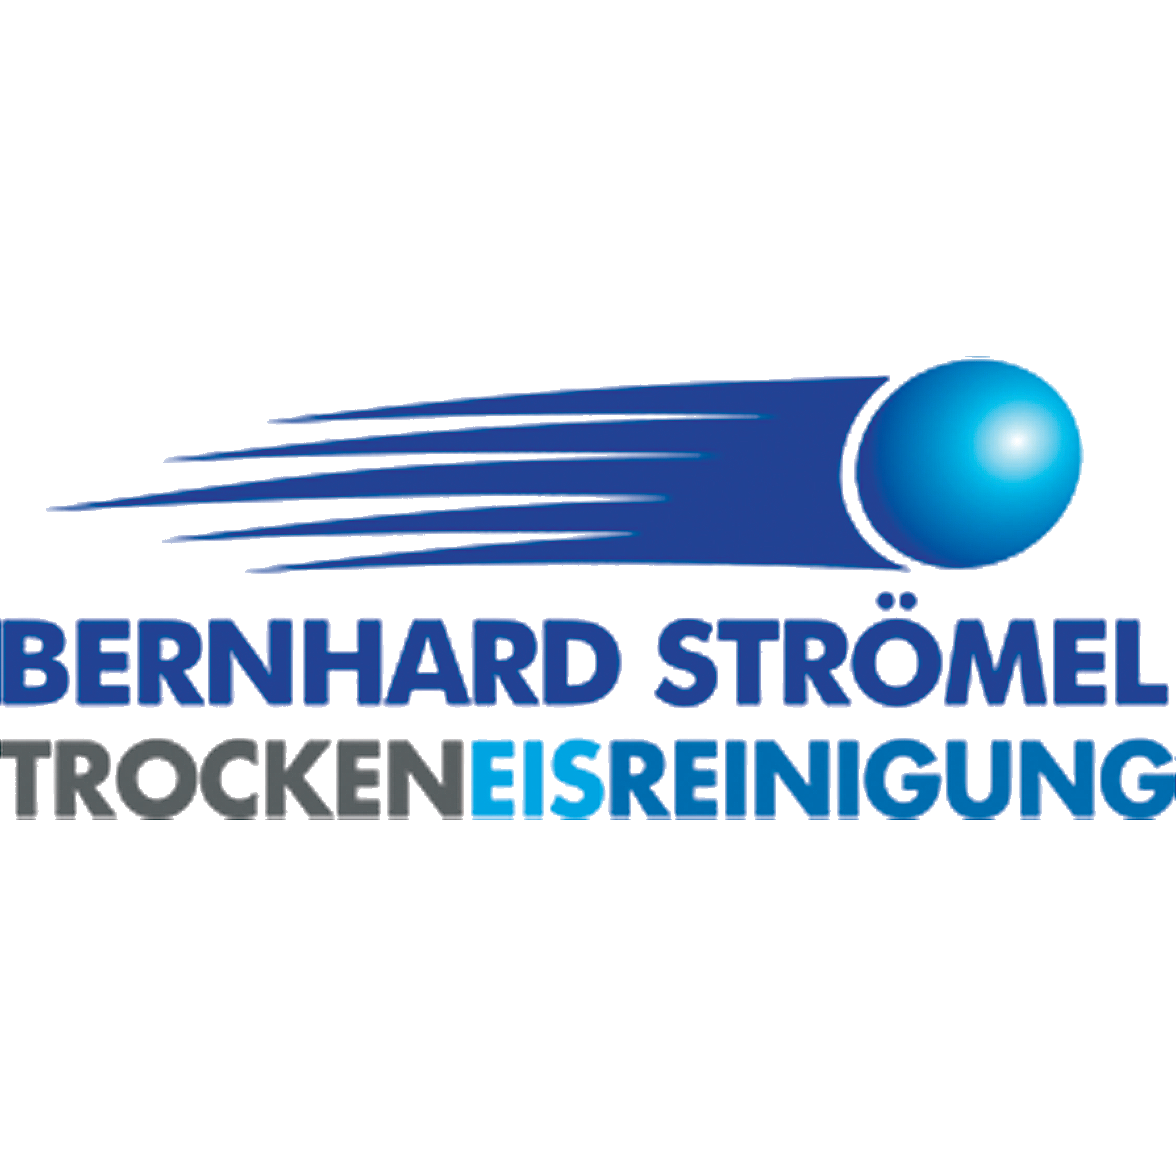 Strömel Bernhard Trockeneisreinigung Logo